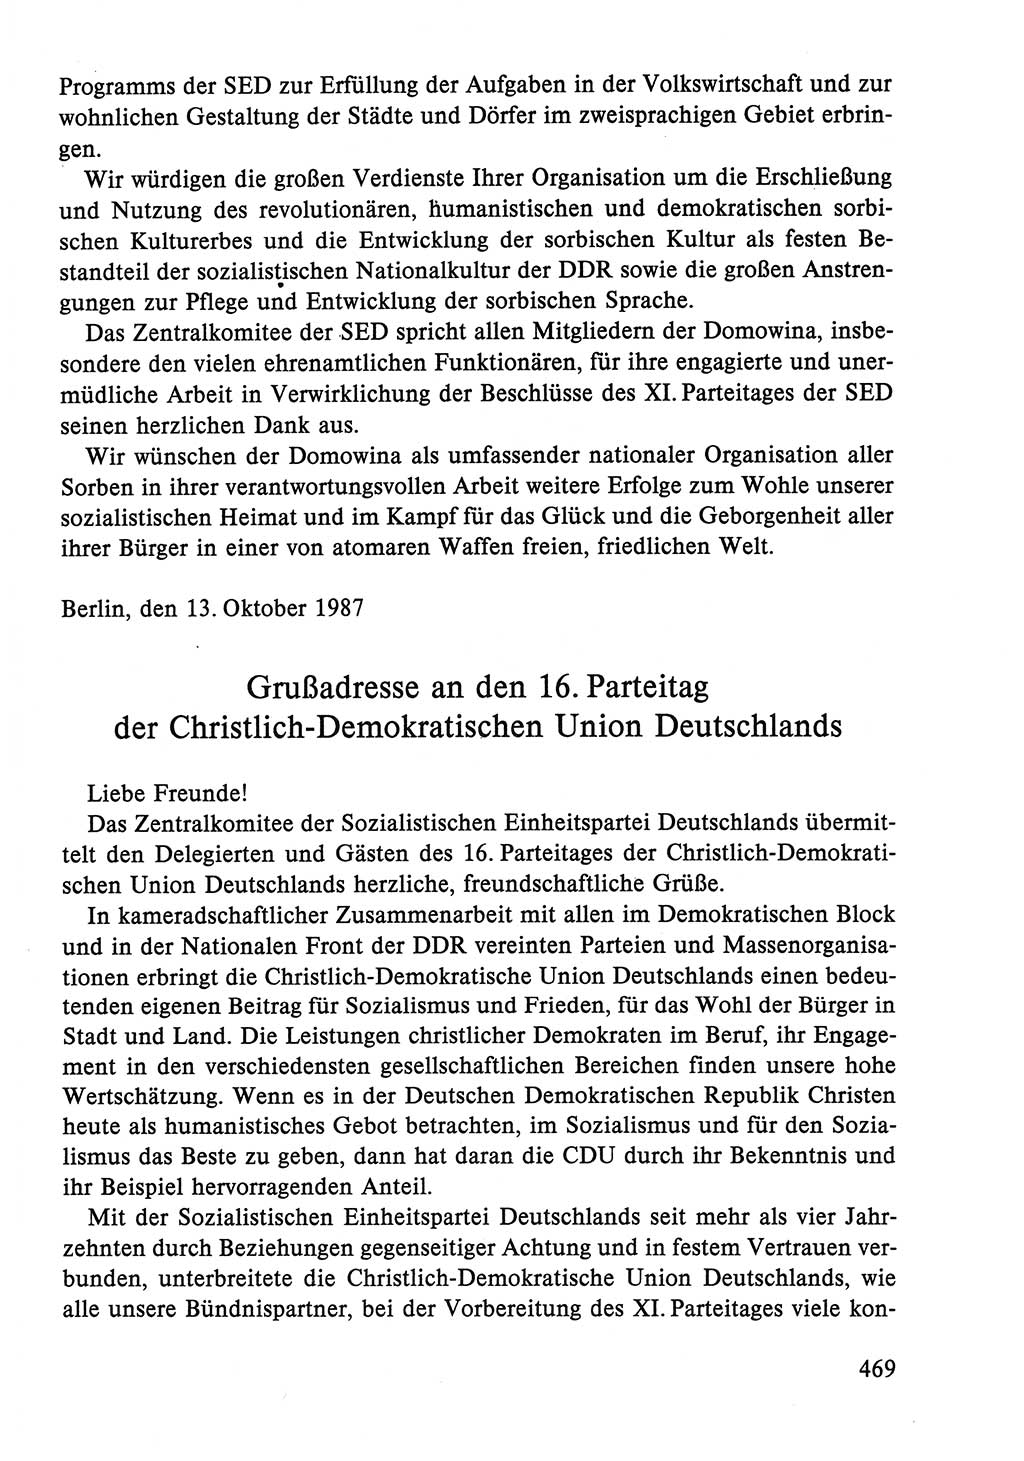 Dokumente der Sozialistischen Einheitspartei Deutschlands (SED) [Deutsche Demokratische Republik (DDR)] 1986-1987, Seite 469 (Dok. SED DDR 1986-1987, S. 469)